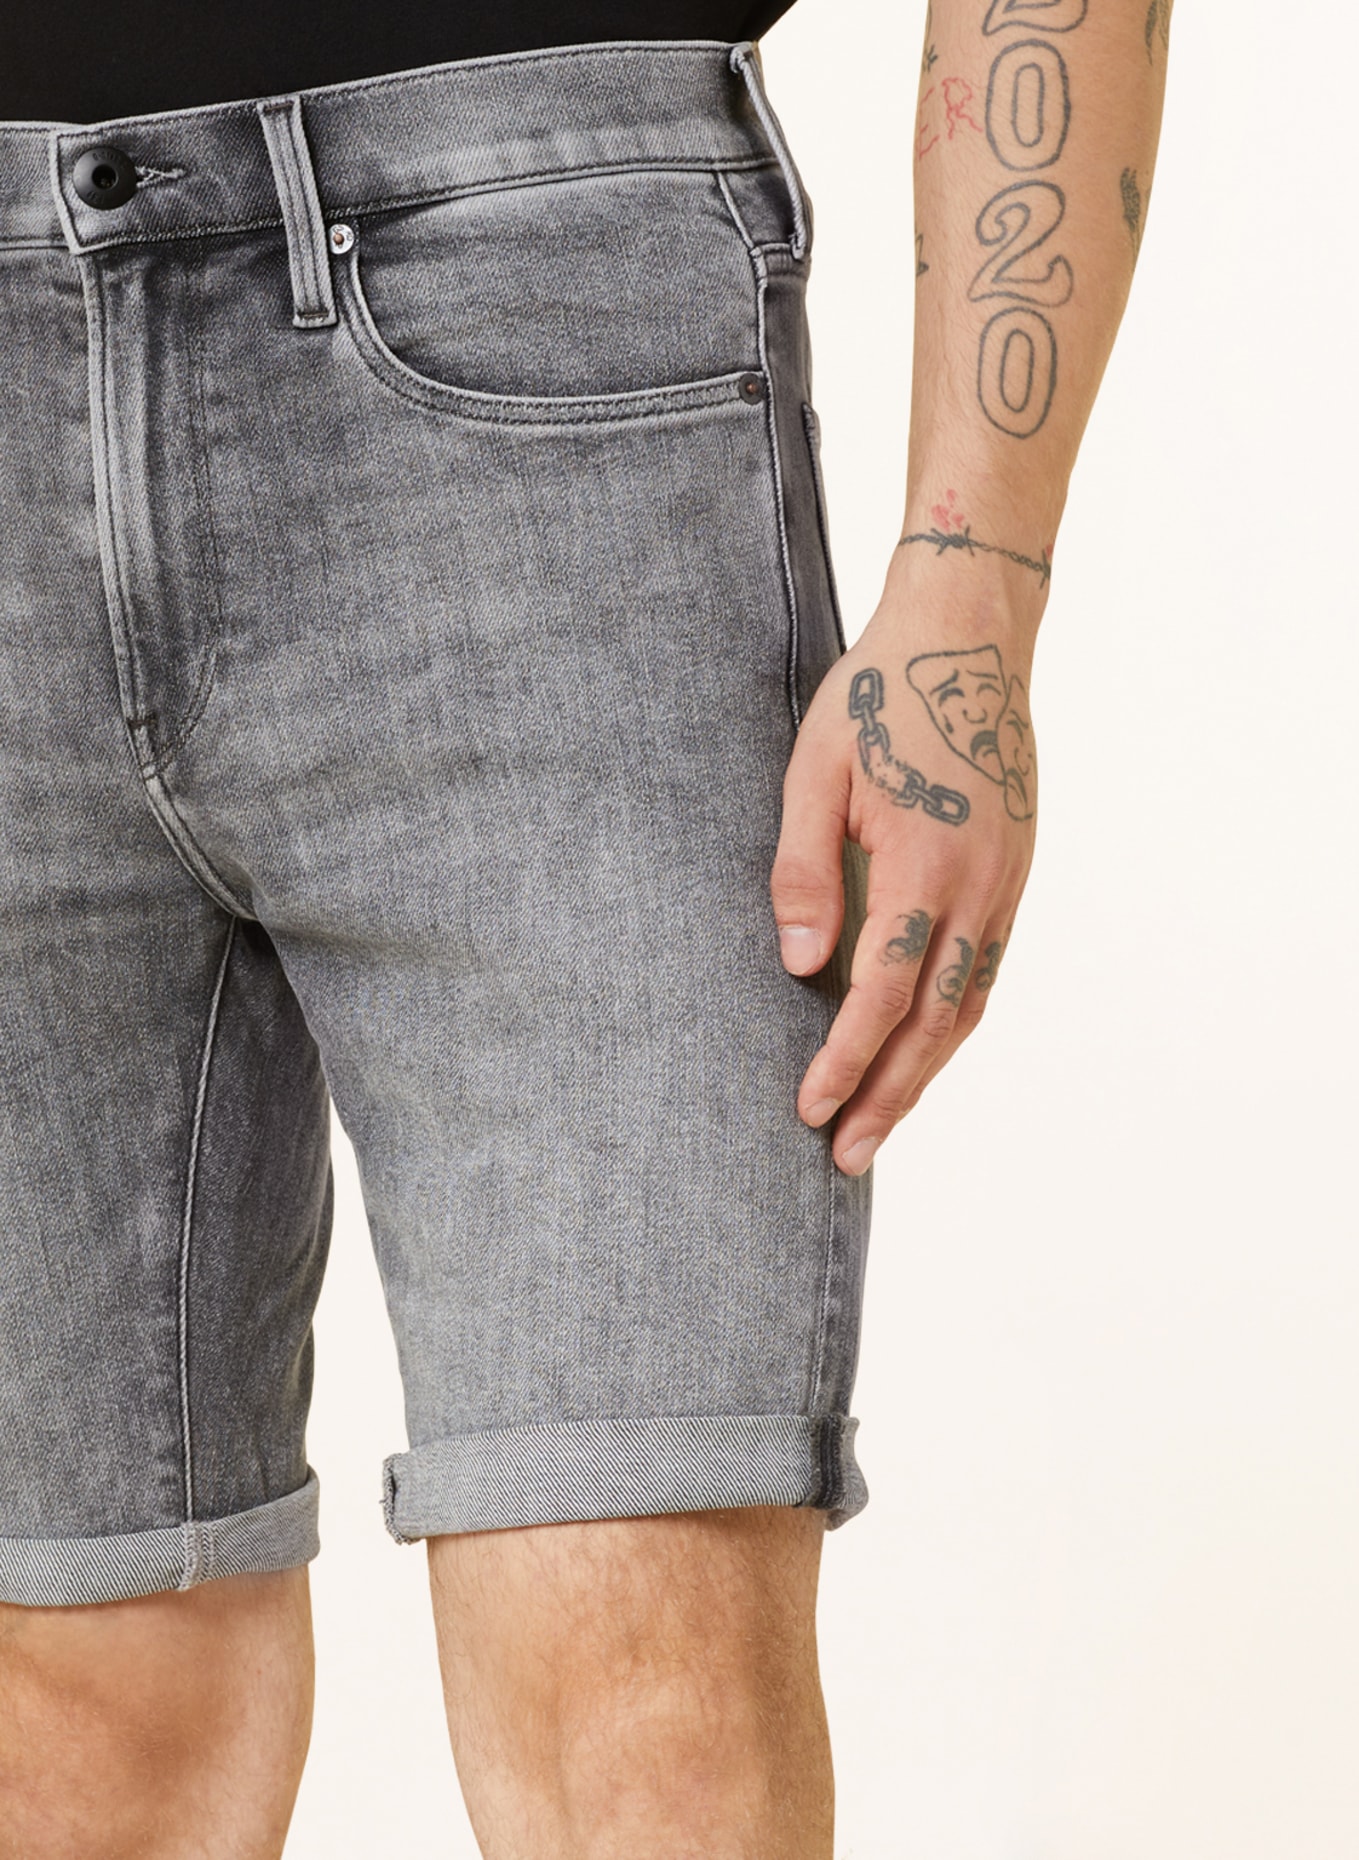 G-Star RAW Denim shorts 3301 SLIM SHORTS, Color: G324 faded grey neblina (Image 5)